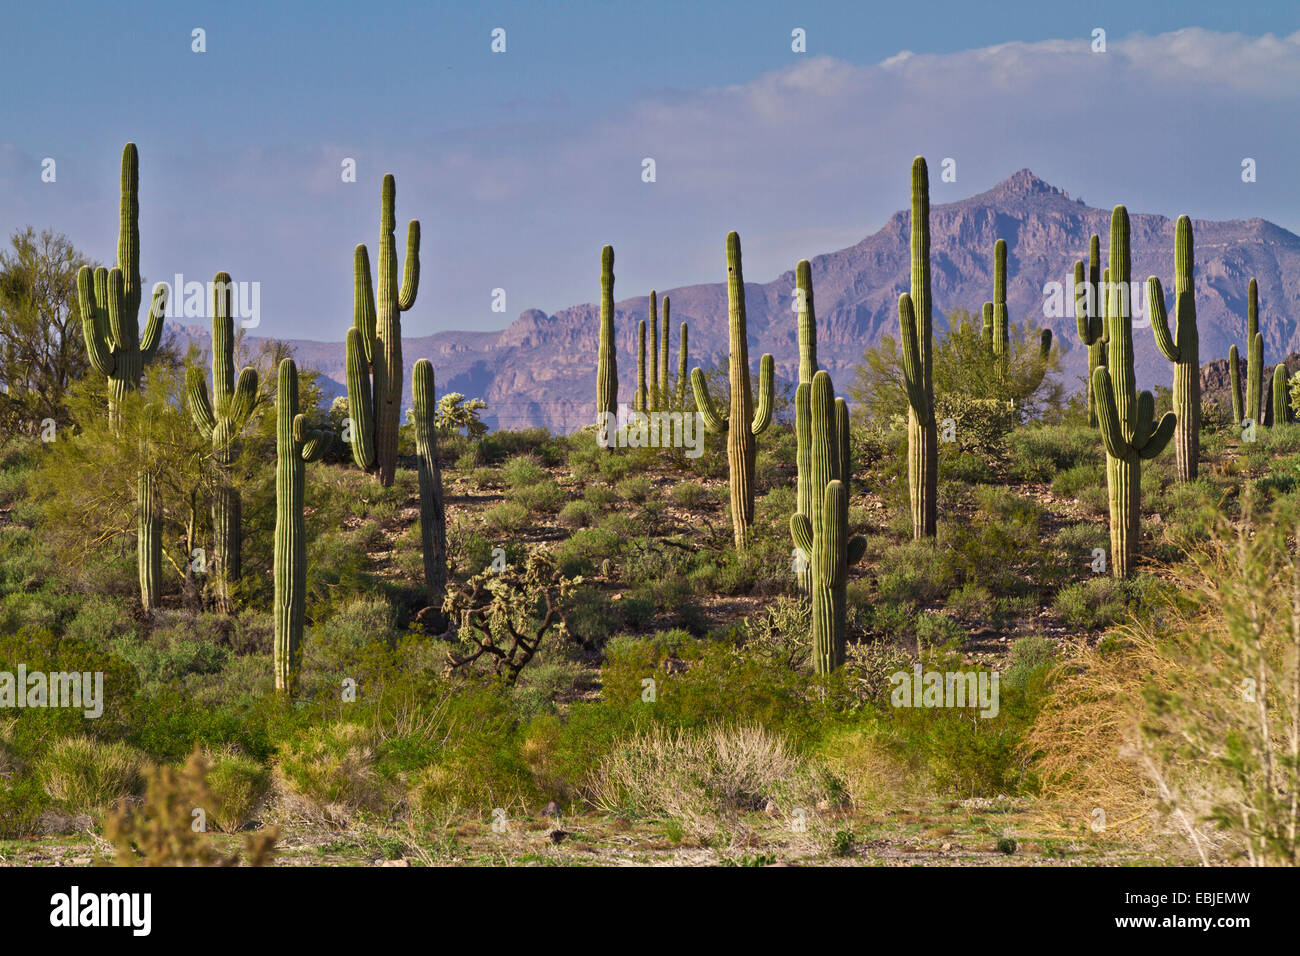 saguaro cactus (Carnegiea gigantea, Cereus giganteus), in Sonora desert, USA Stock Photo